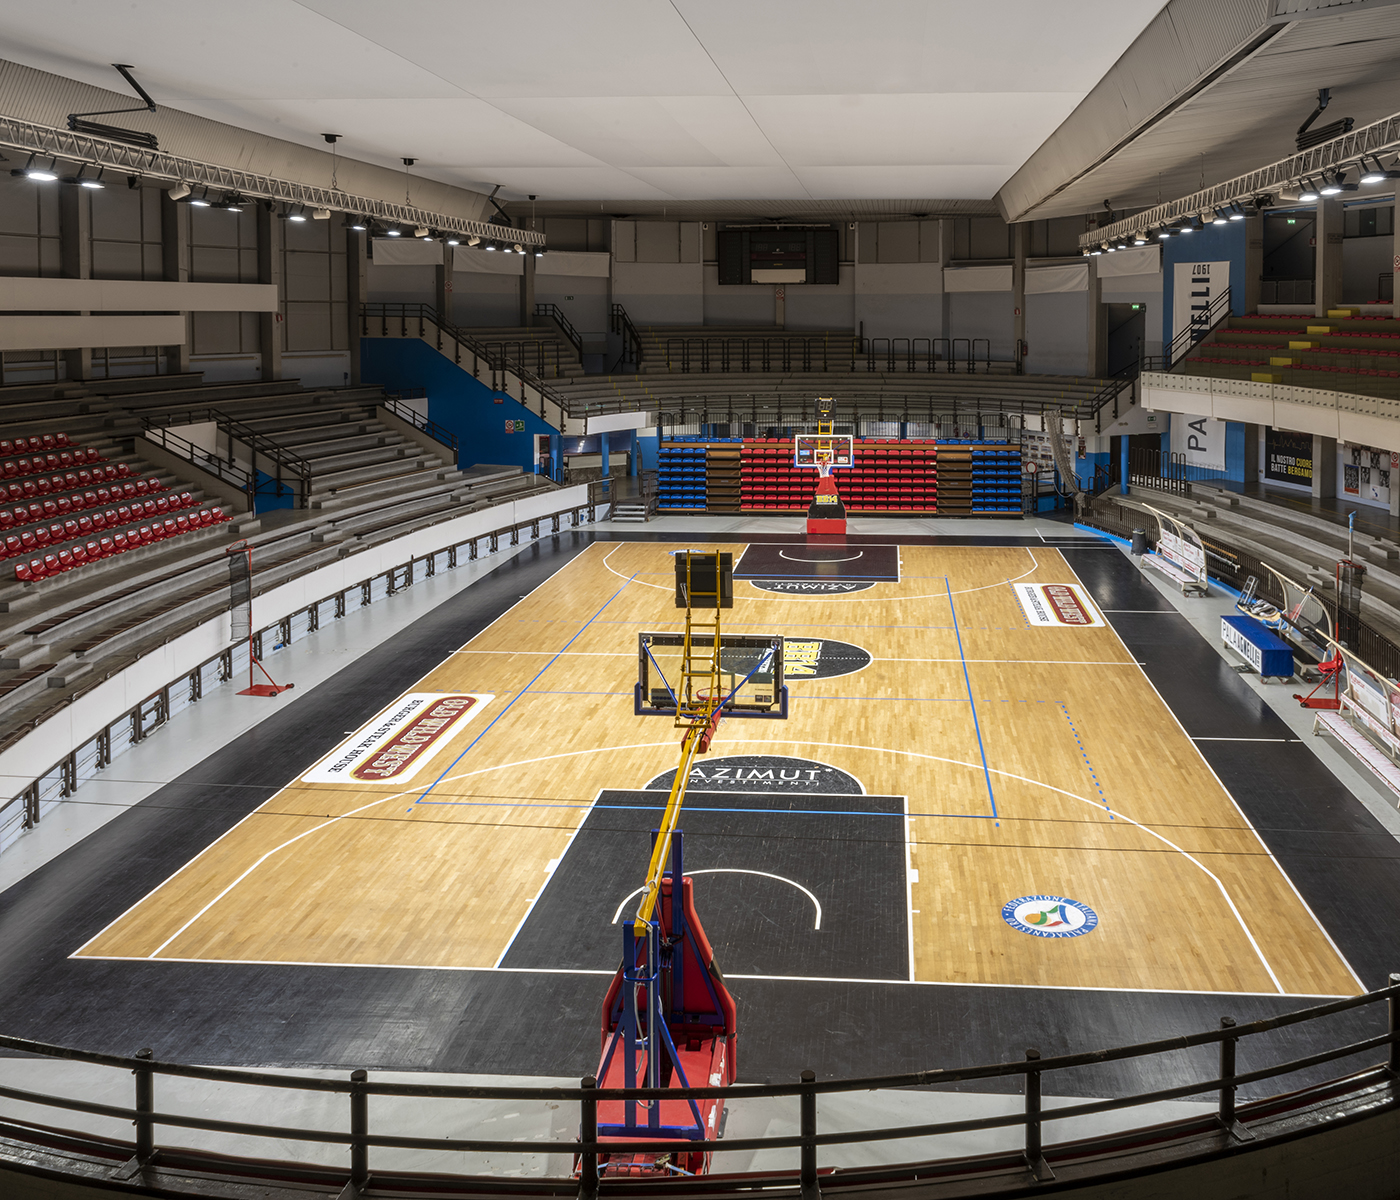 PalaAgnelli impianto sportivo indoor